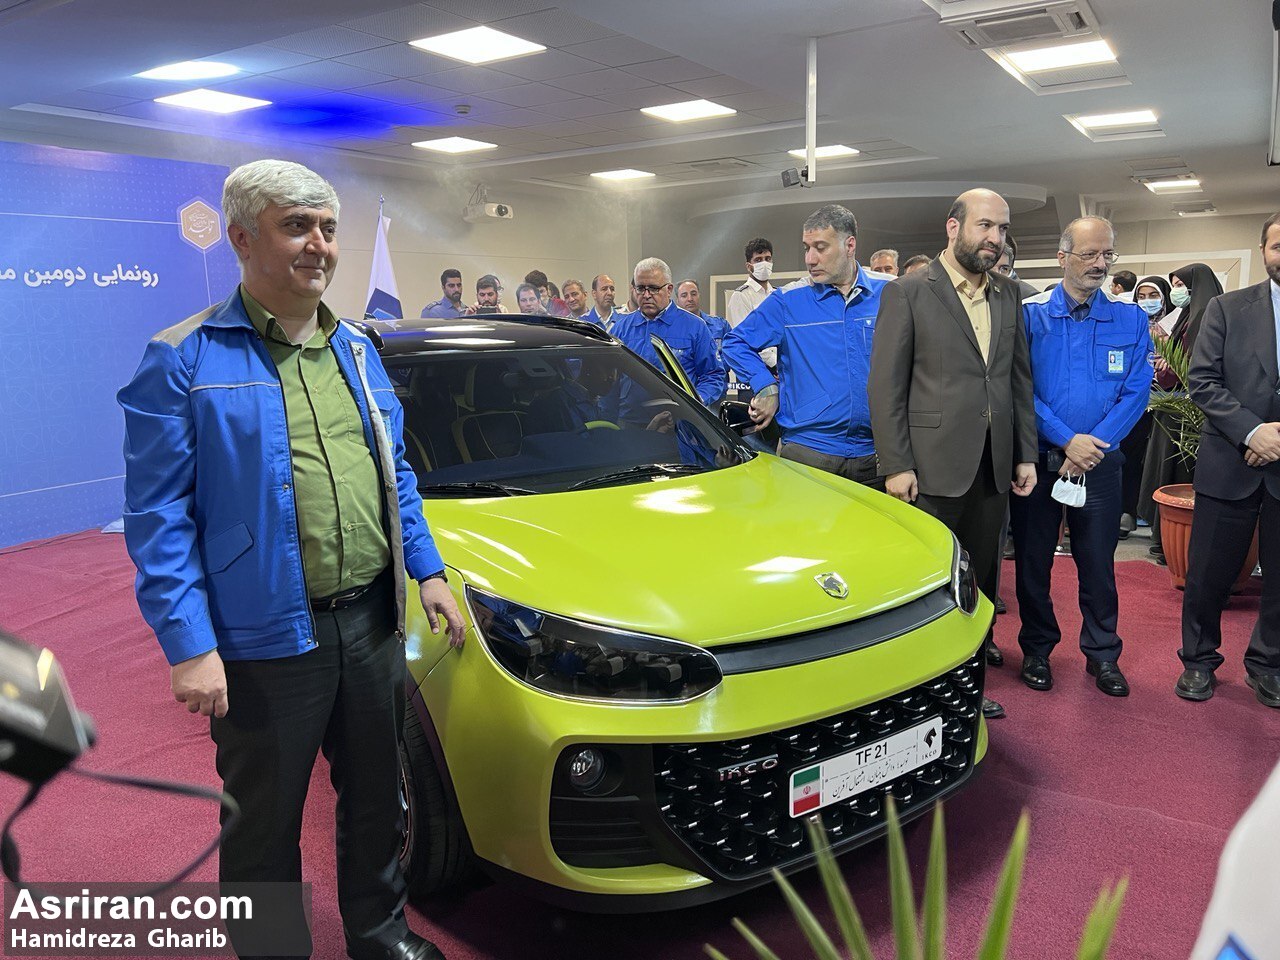 رونمایی ایران خودرو از خودروی جدید TF21 / جایگزین پژو 206 رسما معرفی شد (+ عکس، فیلم و مشخصات فنی)